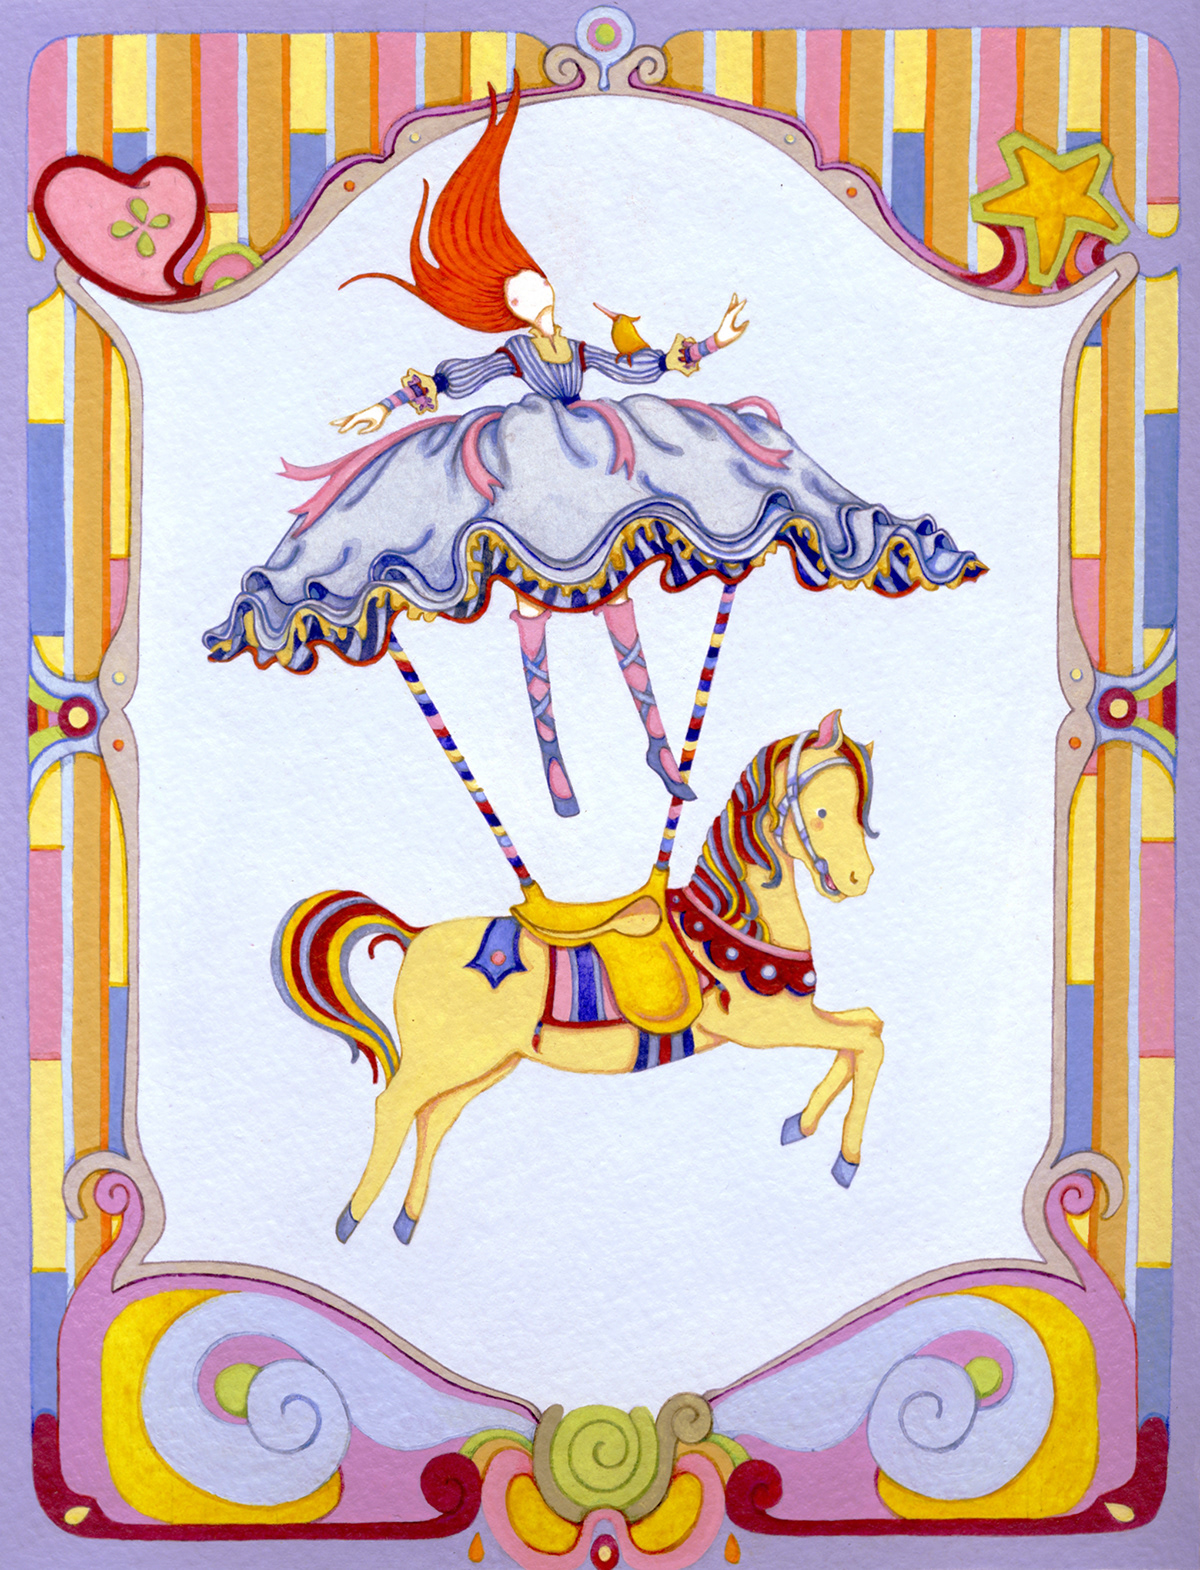 girl carousel horse wooden horse flying girl frame pattern border doll whimsical vintage